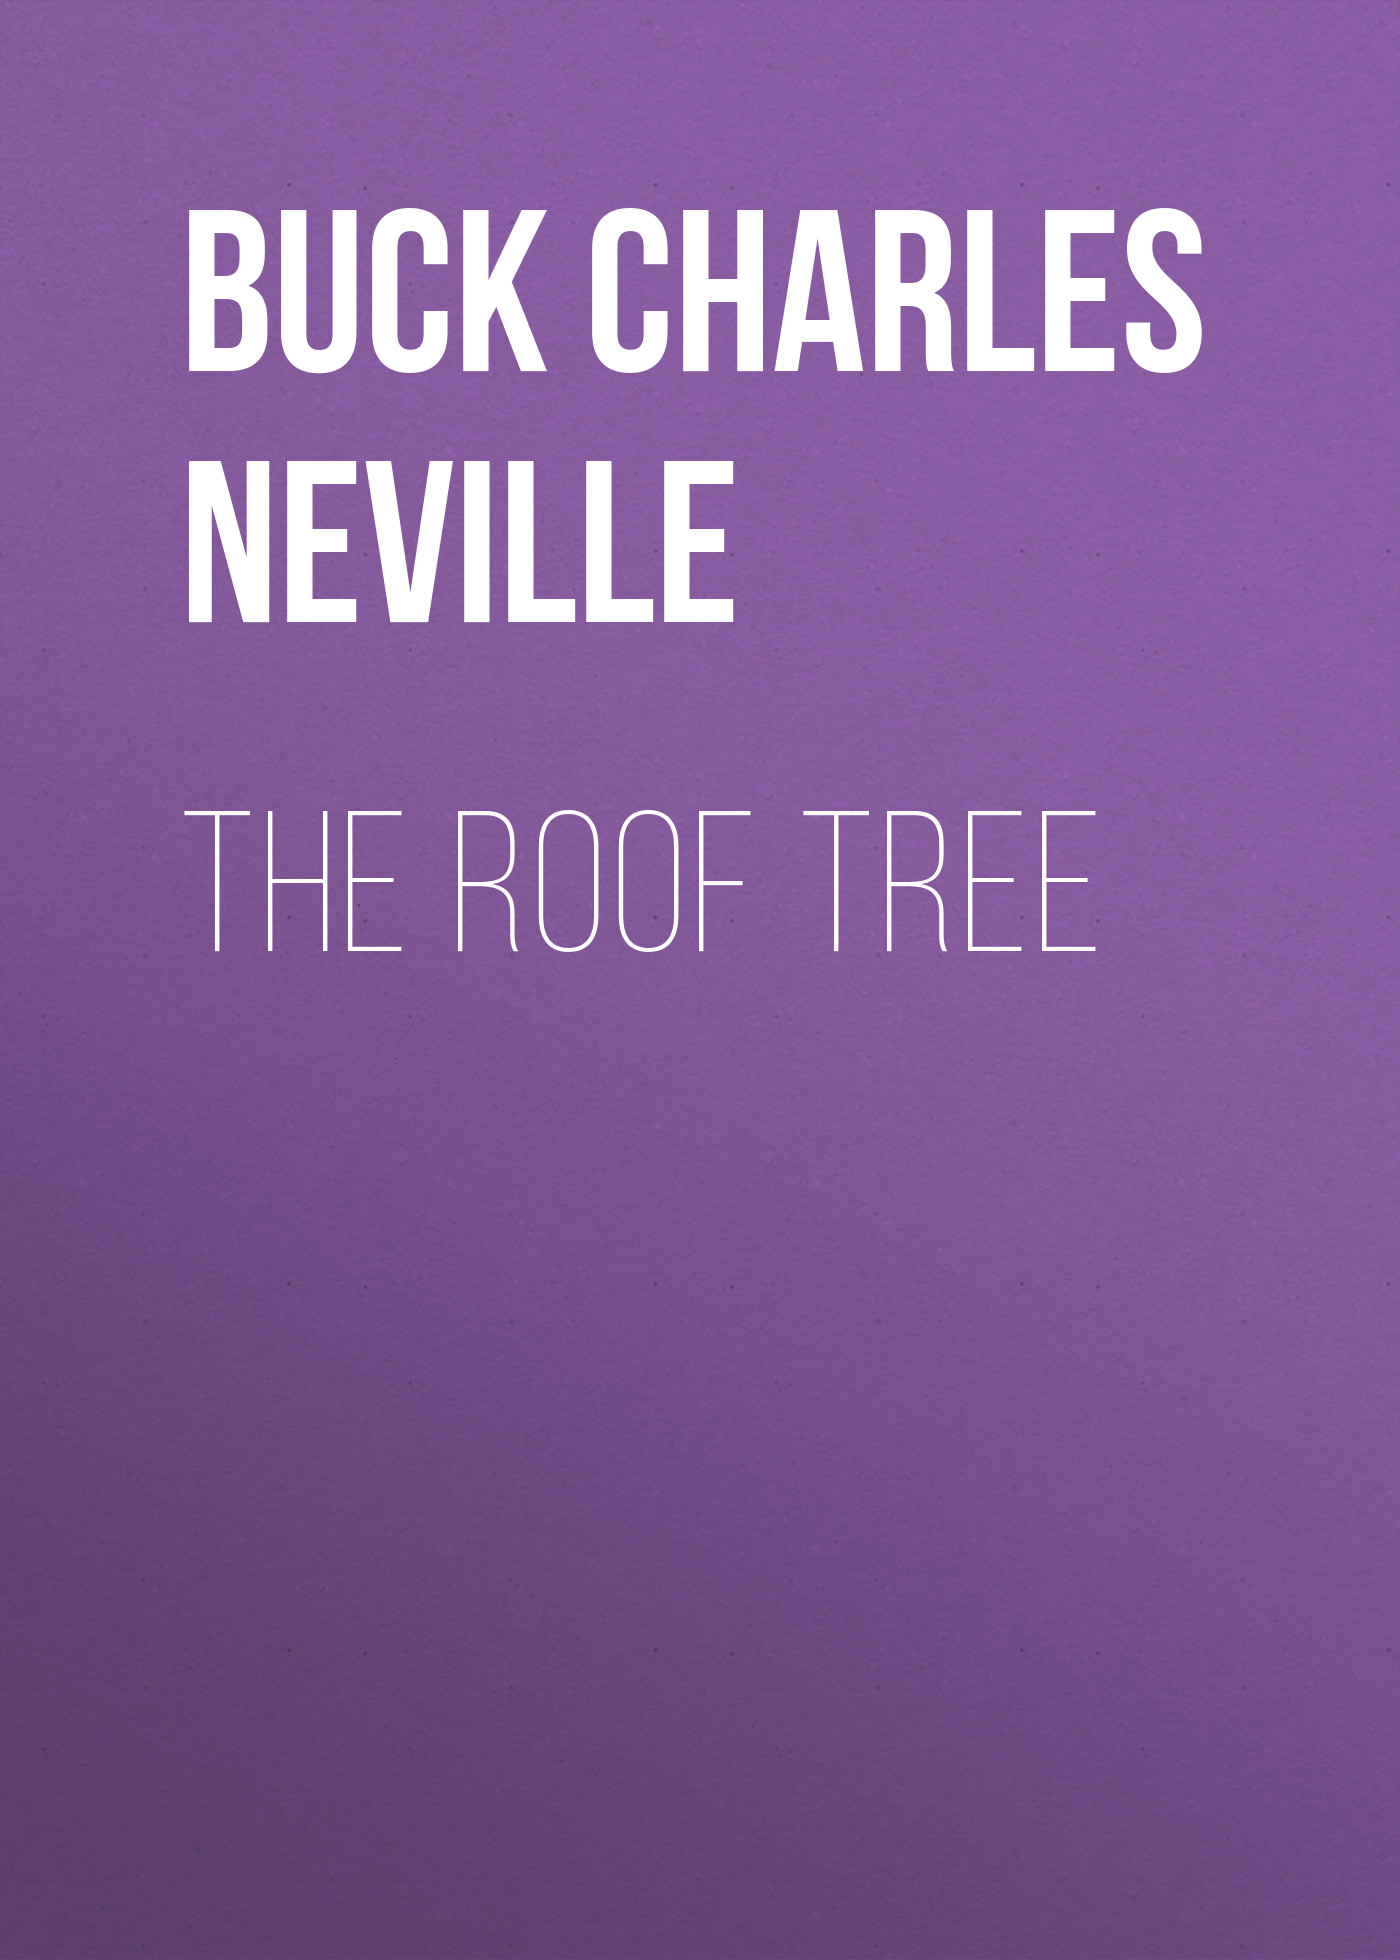 Книга The Roof Tree из серии , созданная Charles Buck, может относится к жанру Зарубежная классика, Зарубежная старинная литература, Иностранные языки. Стоимость электронной книги The Roof Tree с идентификатором 24173044 составляет 0.90 руб.